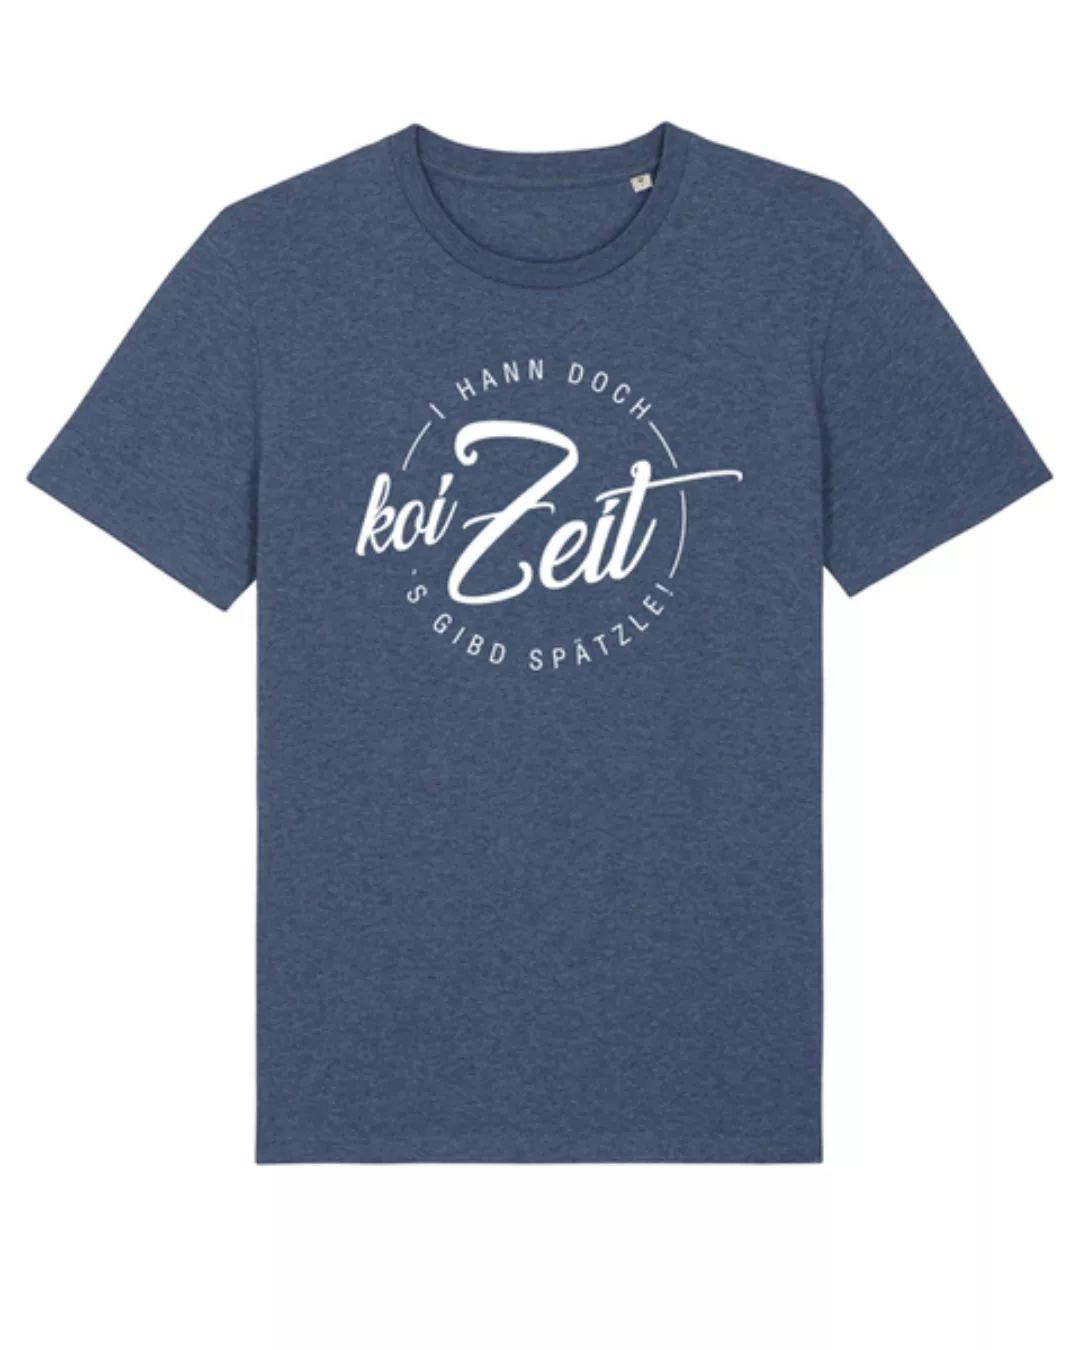 Koi Zeit | T-shirt Herren günstig online kaufen